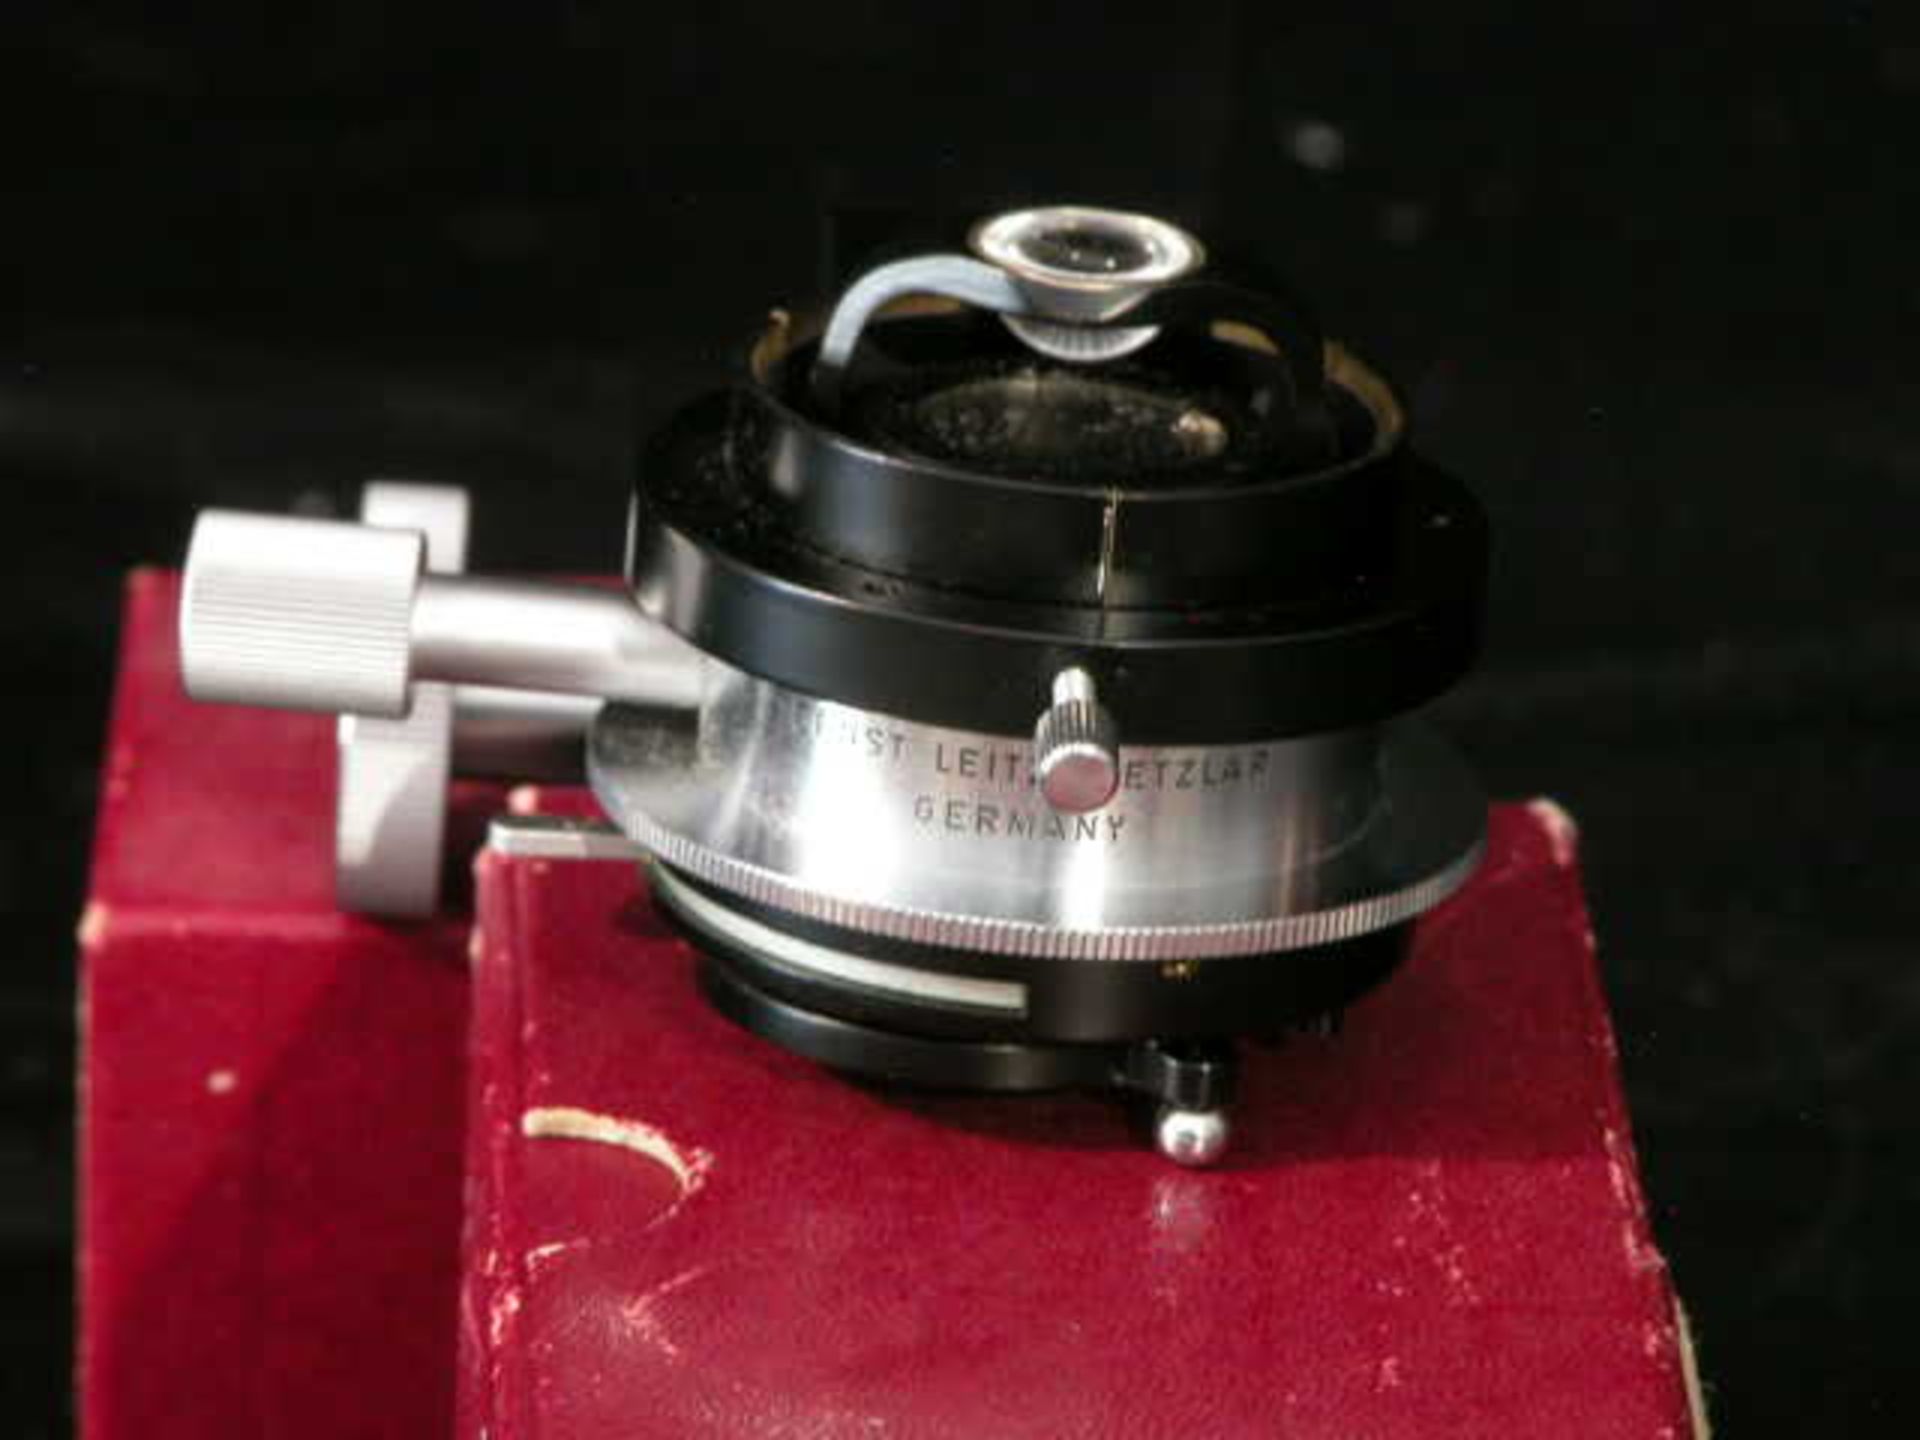 Ernst Leitz Wetzlar Low Power Microscope Condenser, Qty 1, 323410830997 - Image 6 of 8